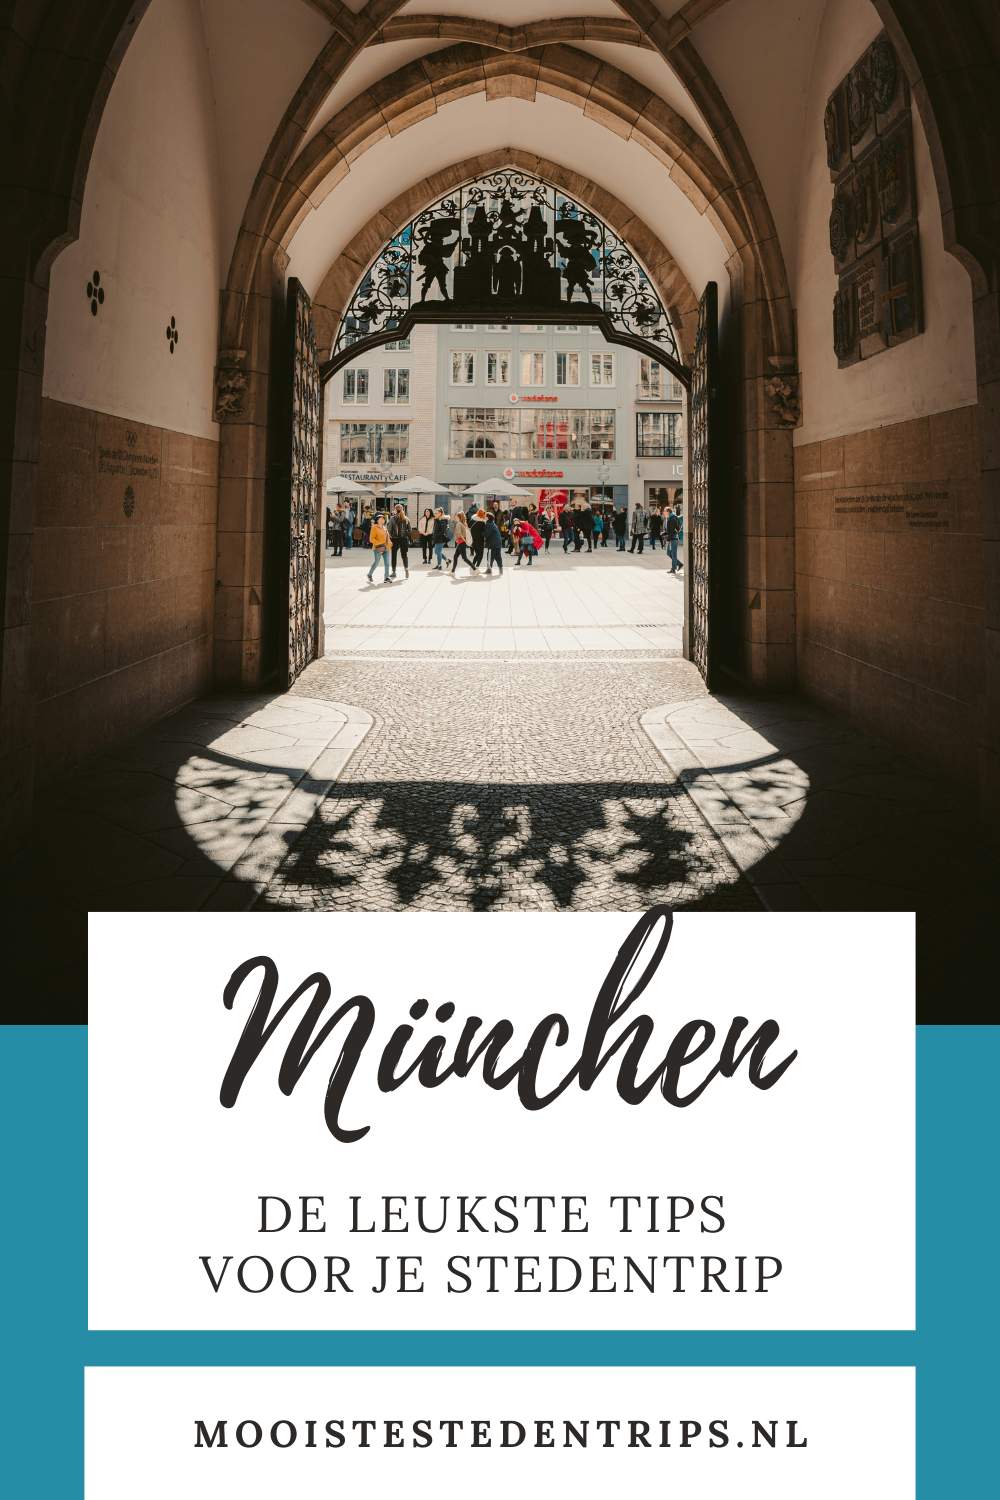 Stedentrip München: bekijk de leukste tips en plan een stedentrip München | Mooistestedentrips.nl